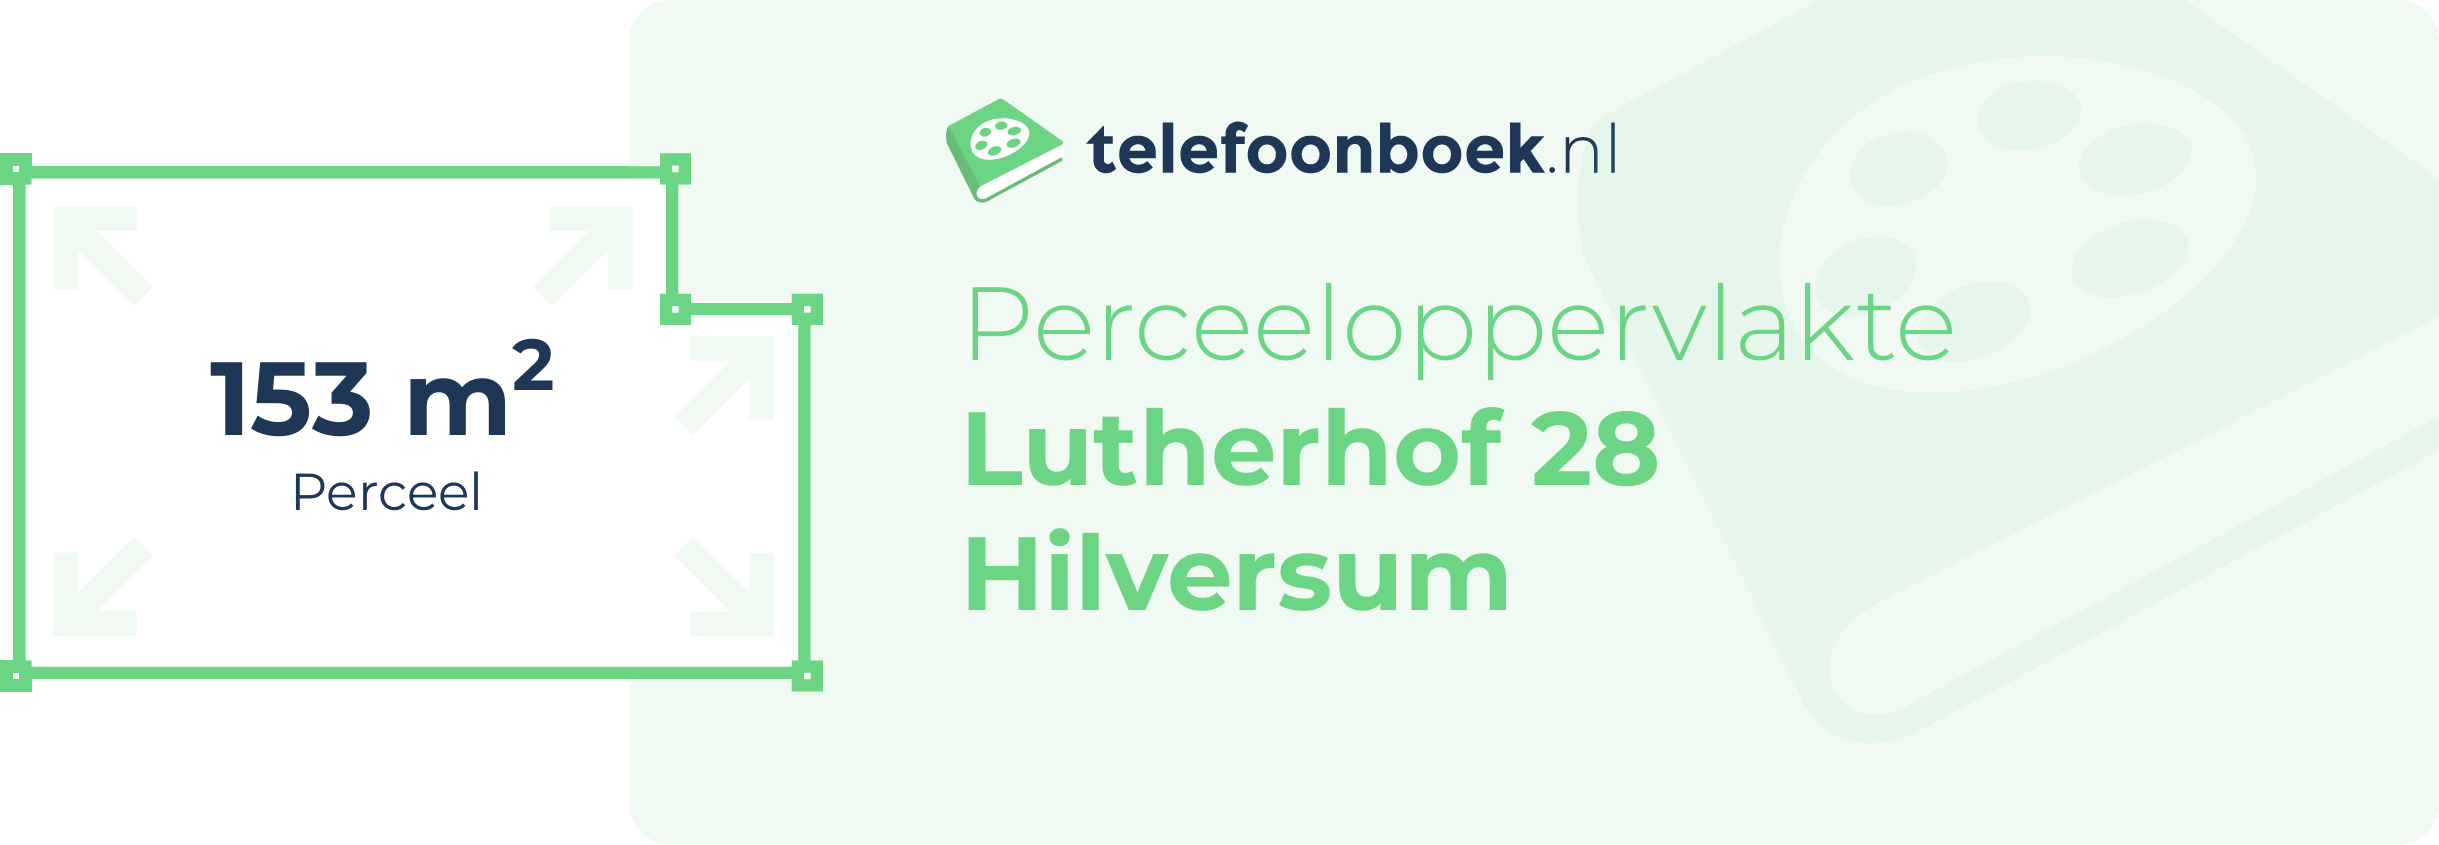 Perceeloppervlakte Lutherhof 28 Hilversum